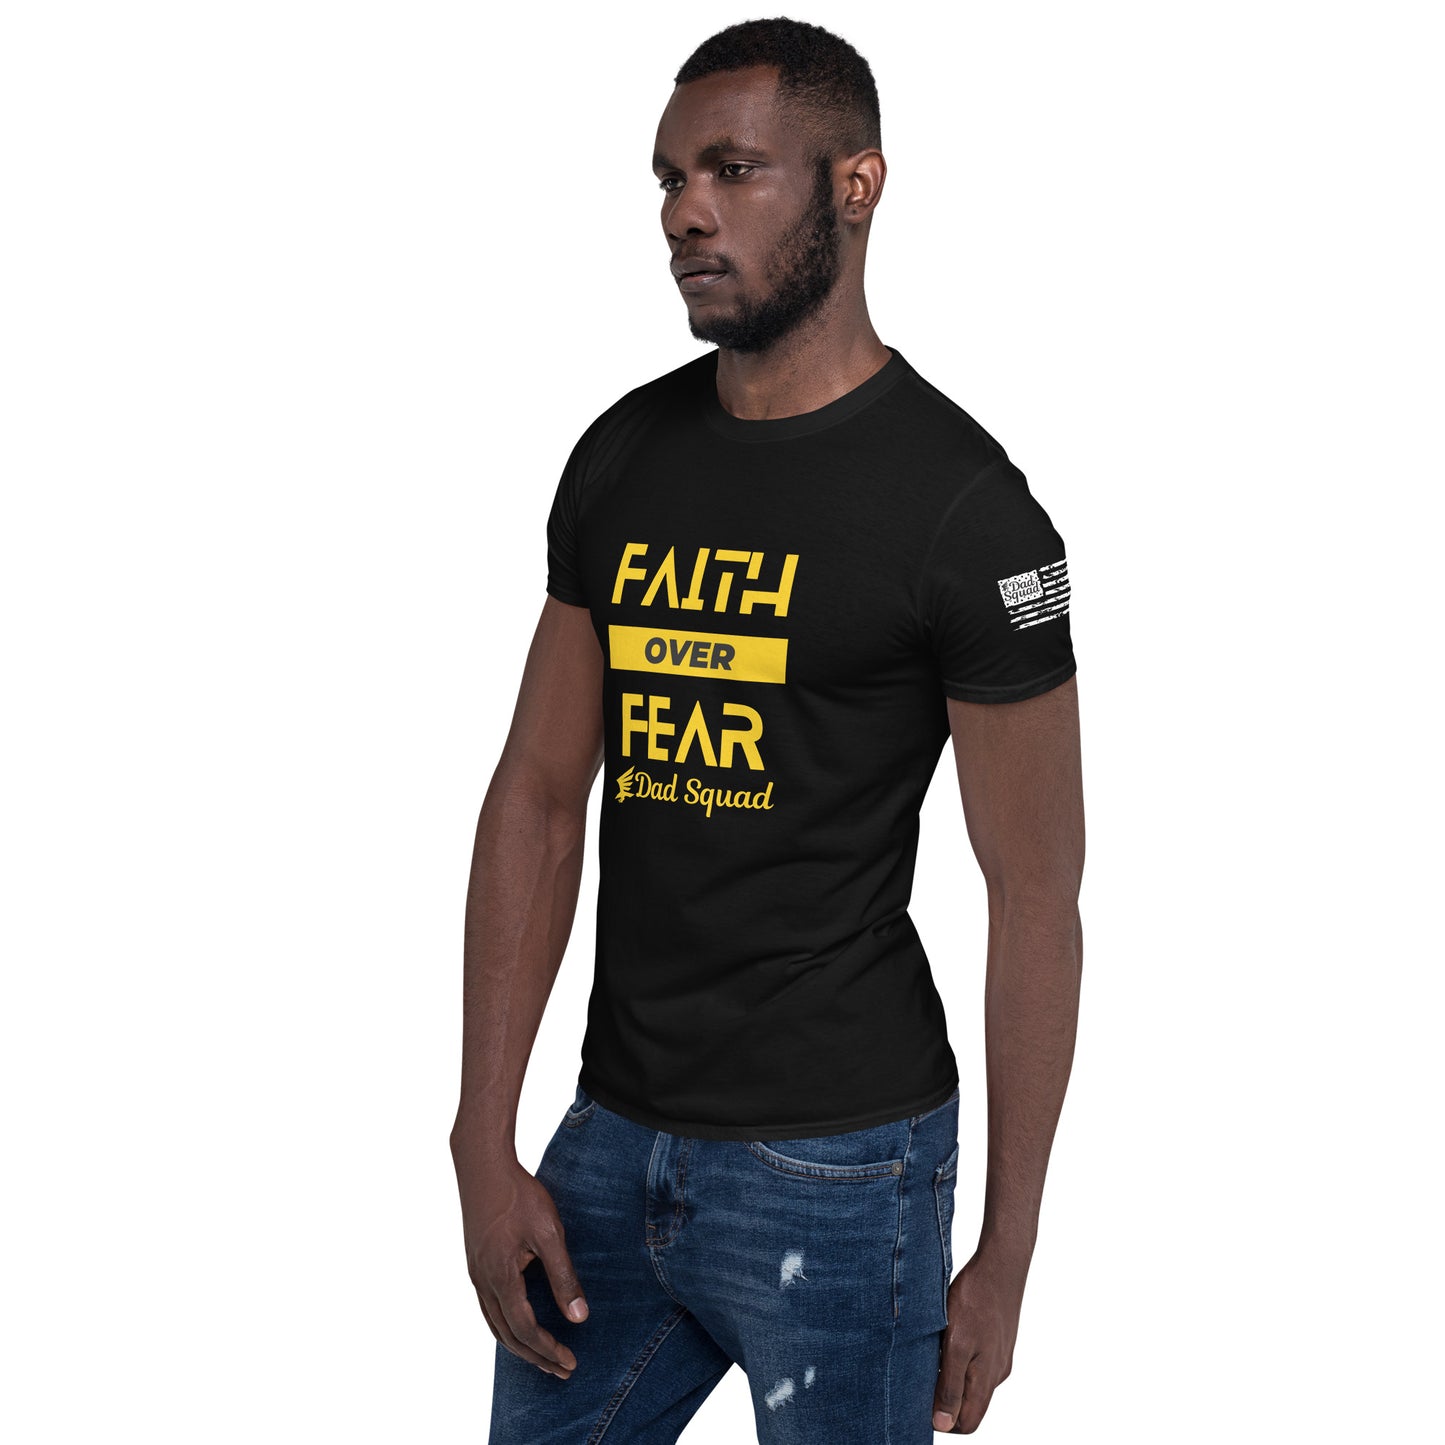 Dad Squad Short-Sleeve T-Shirt - Faith Over Fear